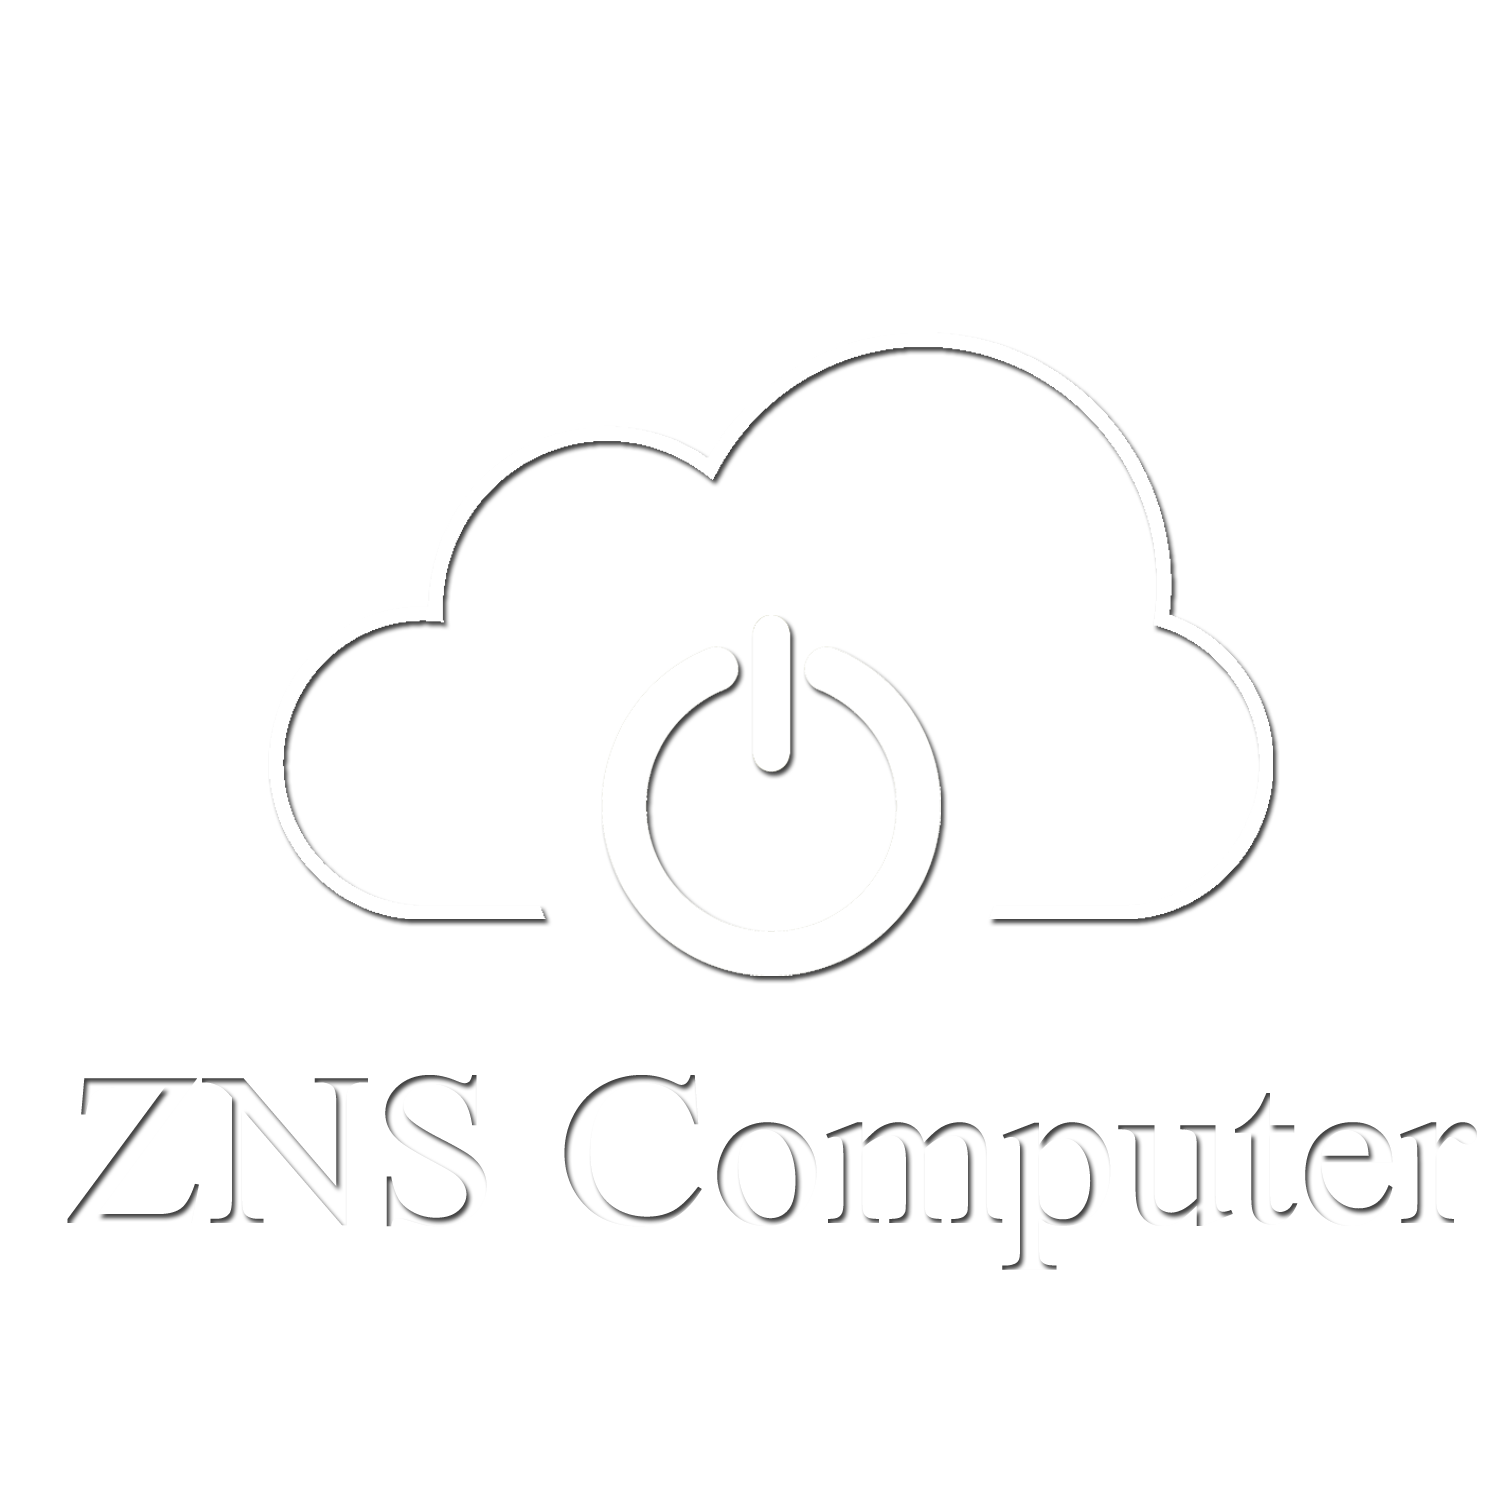 ZNS Computer